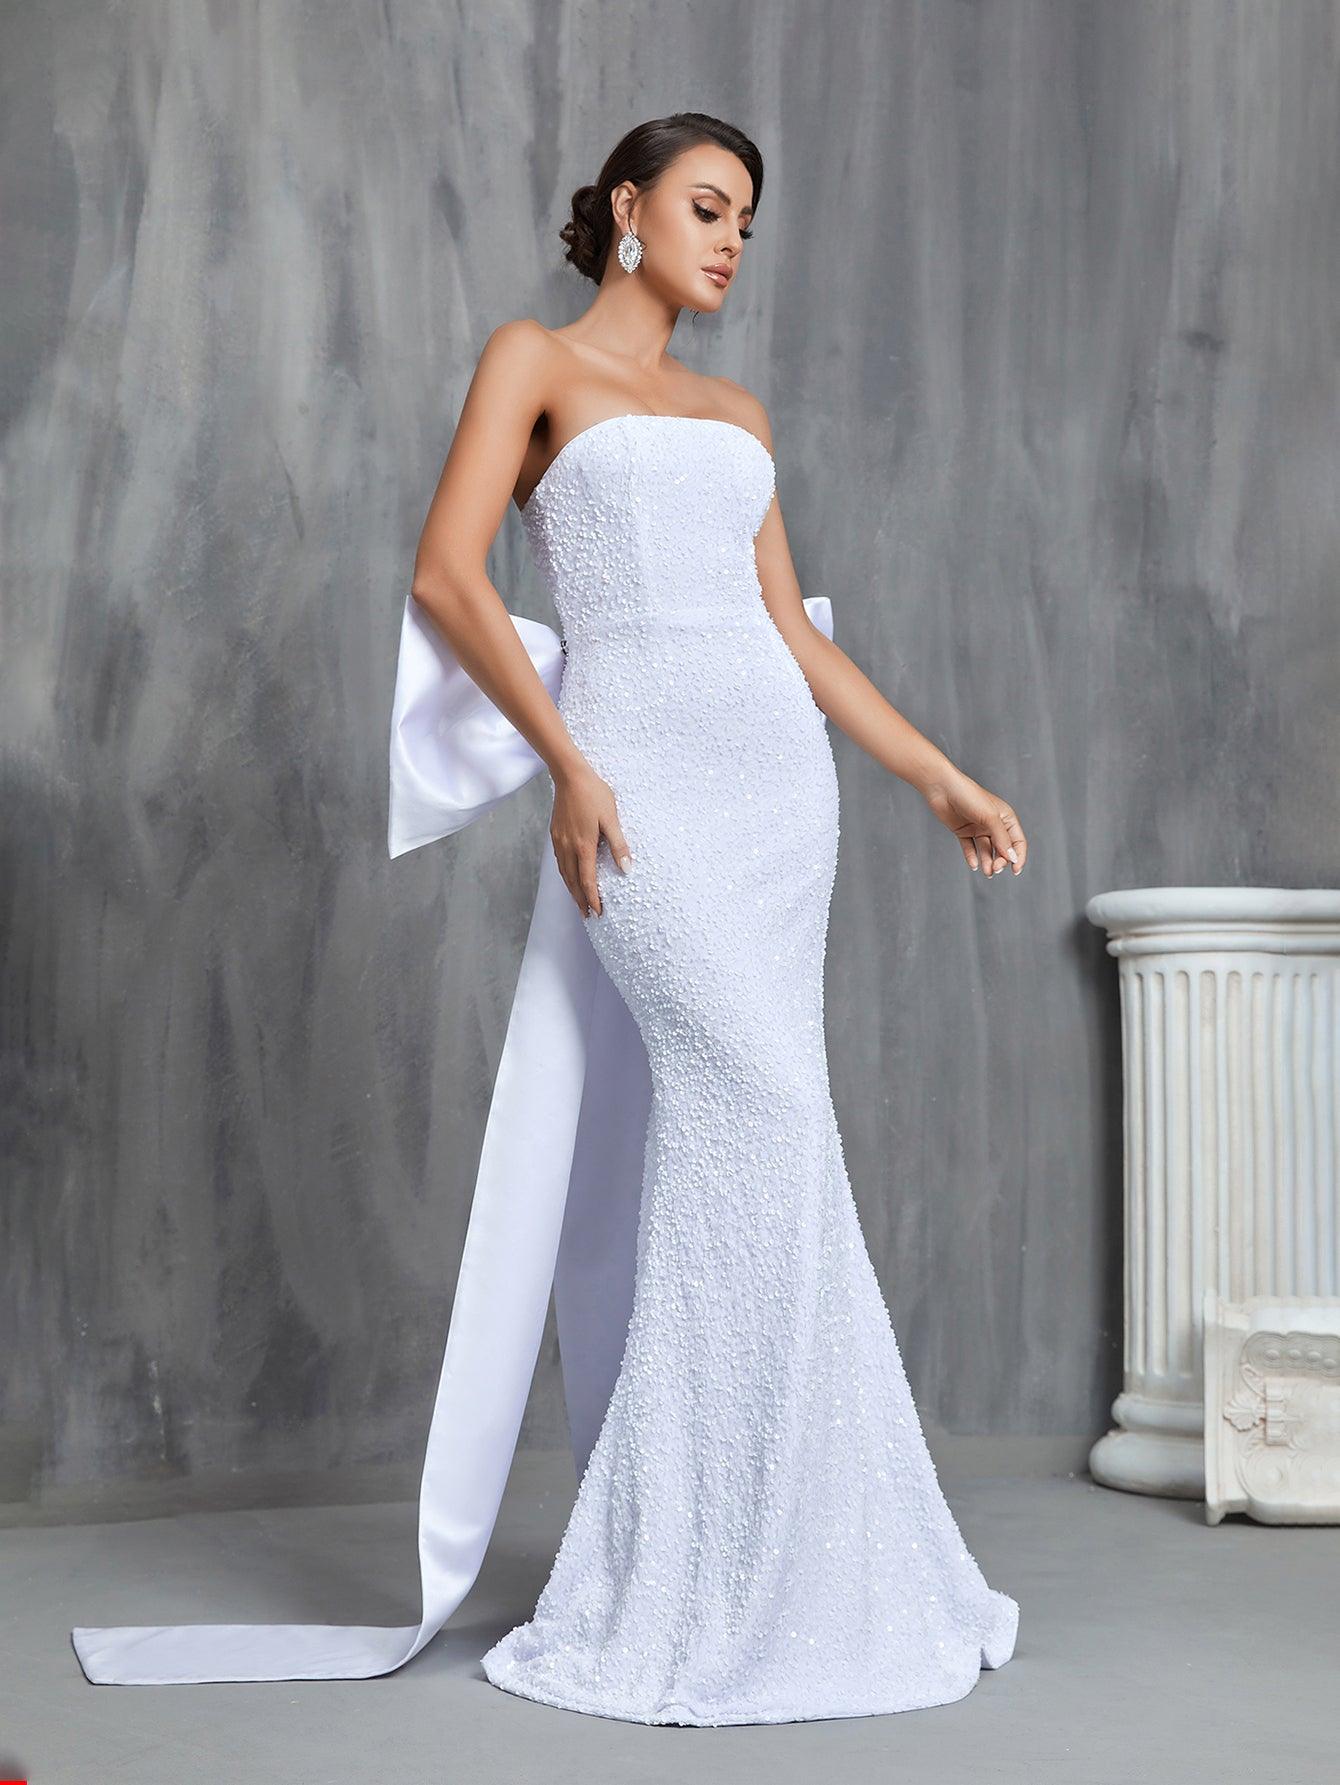 Sequin Mermaid Tube Wedding Dress With Satin Big Bow - Elonnashop